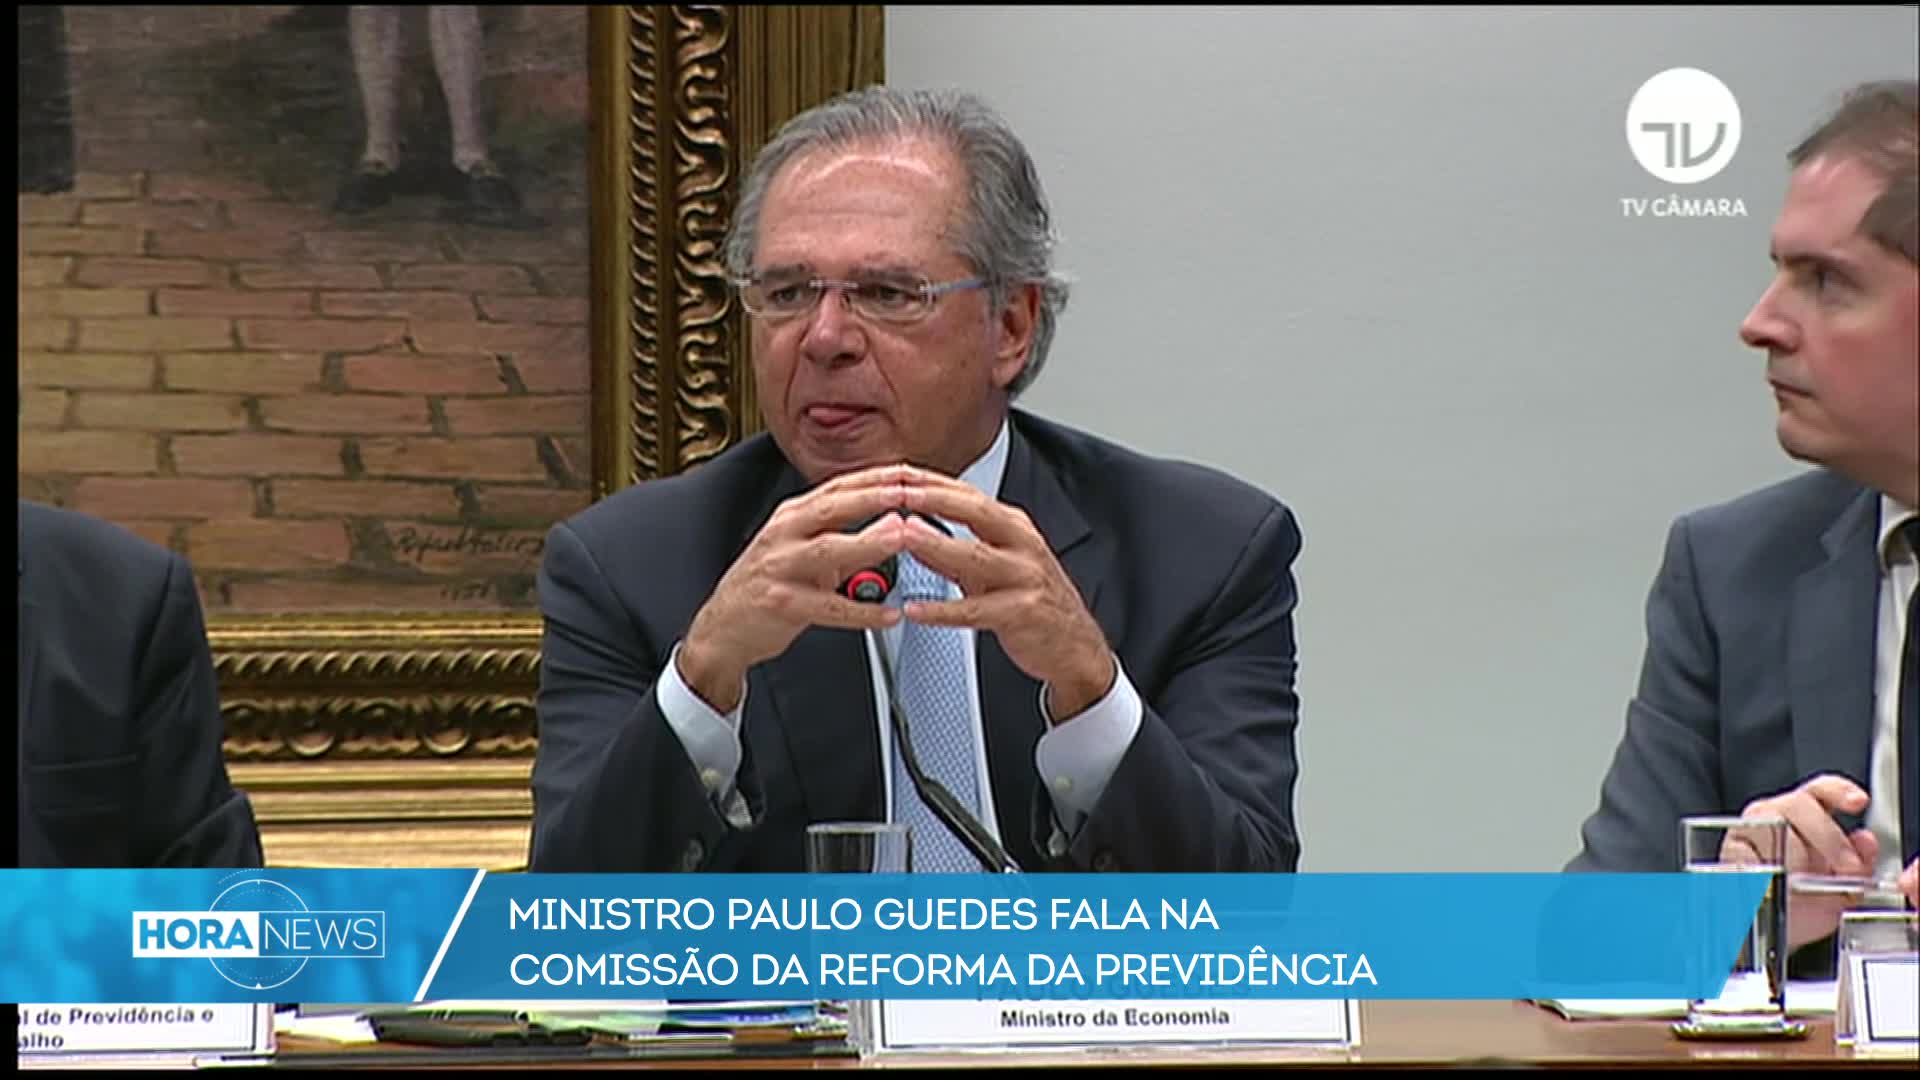 Vídeo: Paulo Guedes defende reforma da Previdência em comissão